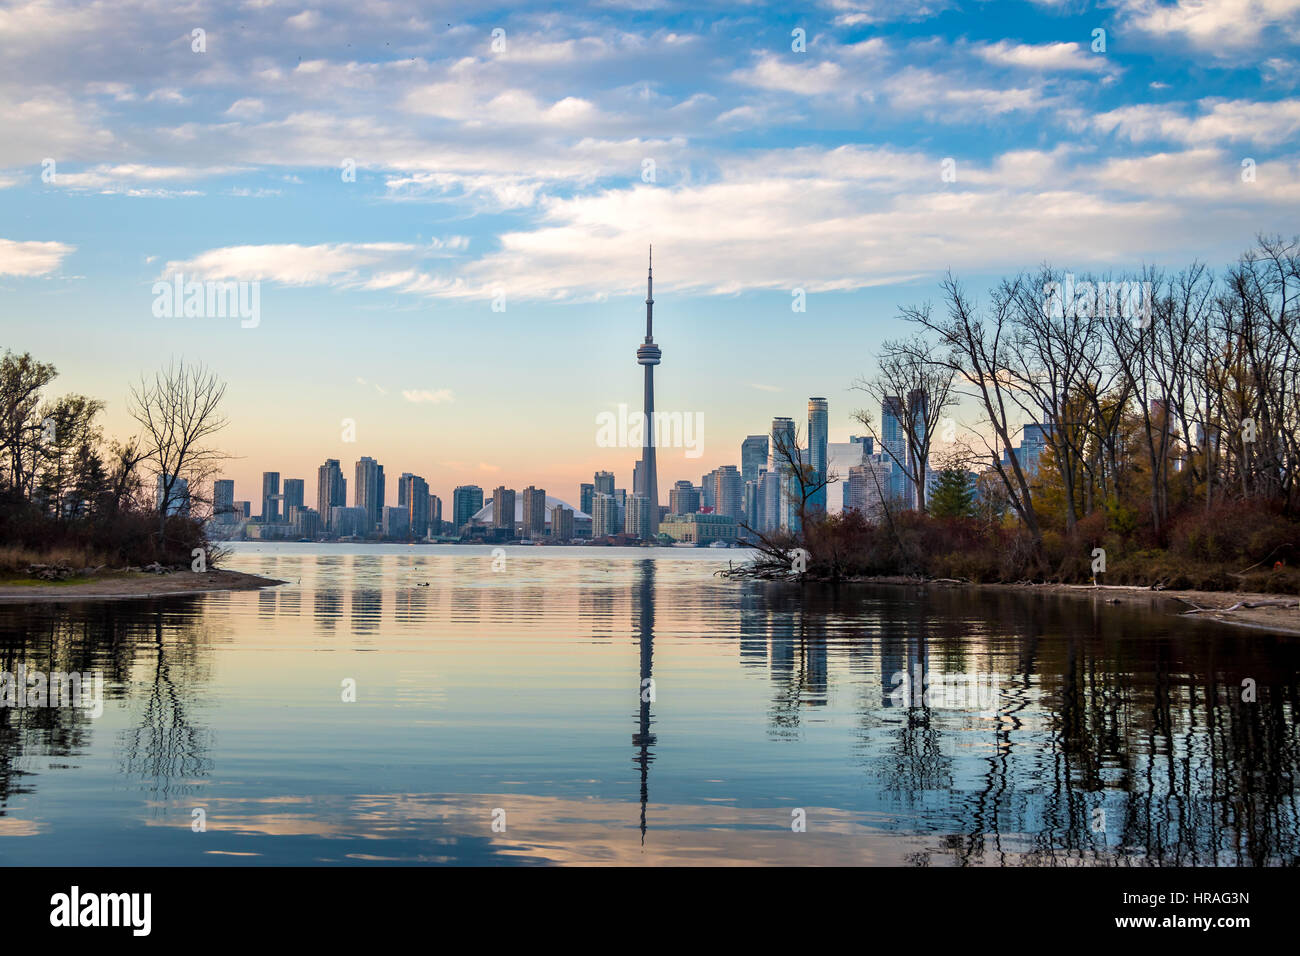 Toronto Skyline view from Toronto Islands - Toronto, Ontario, Canada Stock Photo